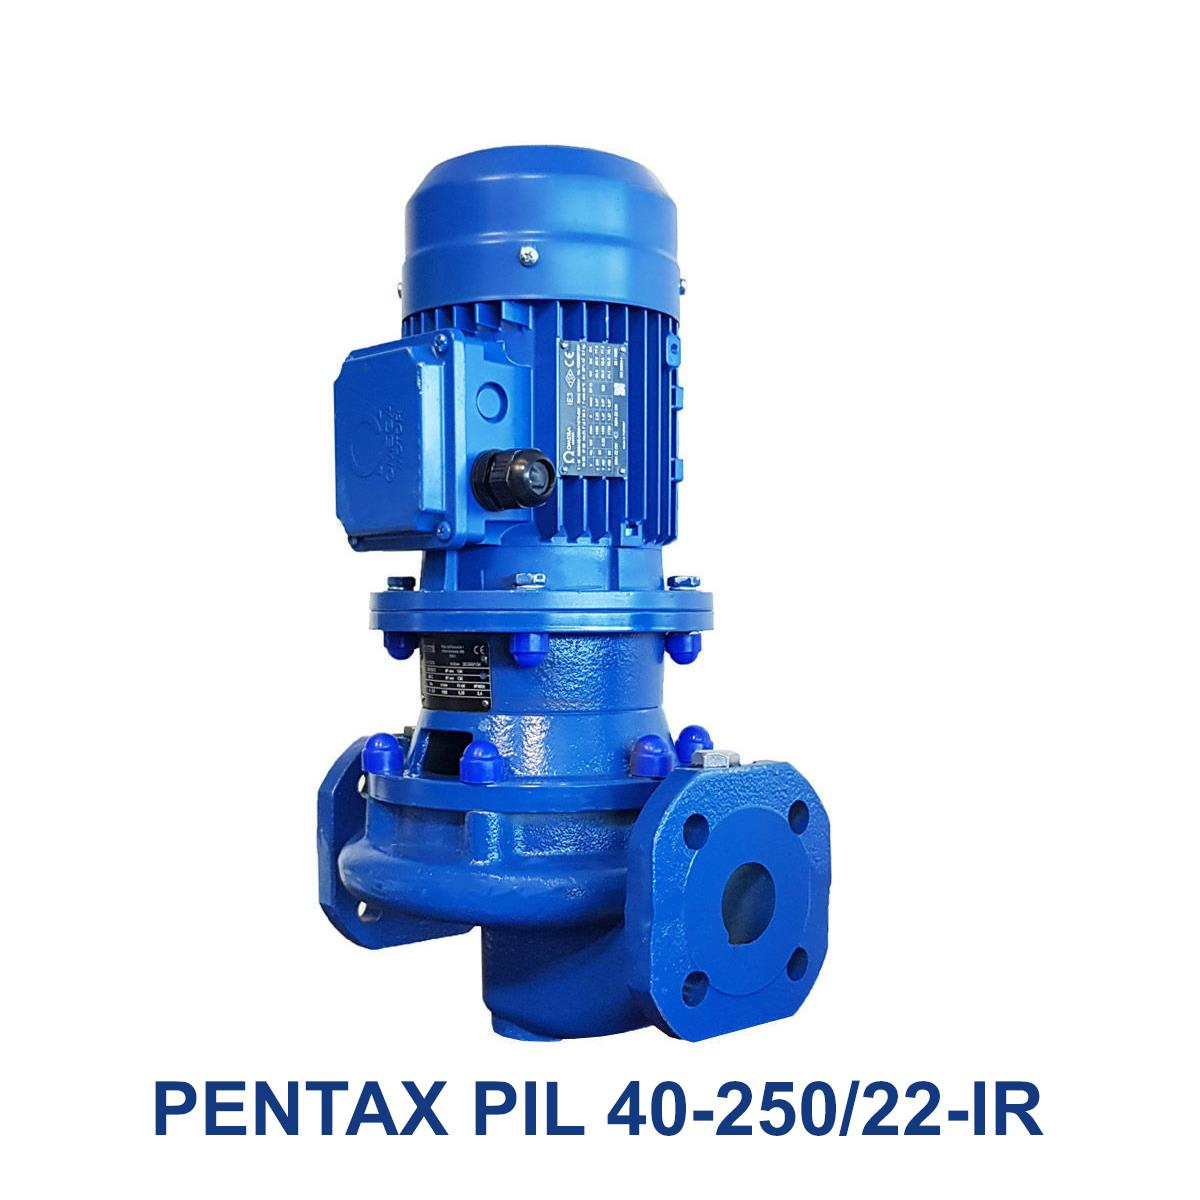 PENTAX-PIL-40-250-22-IR